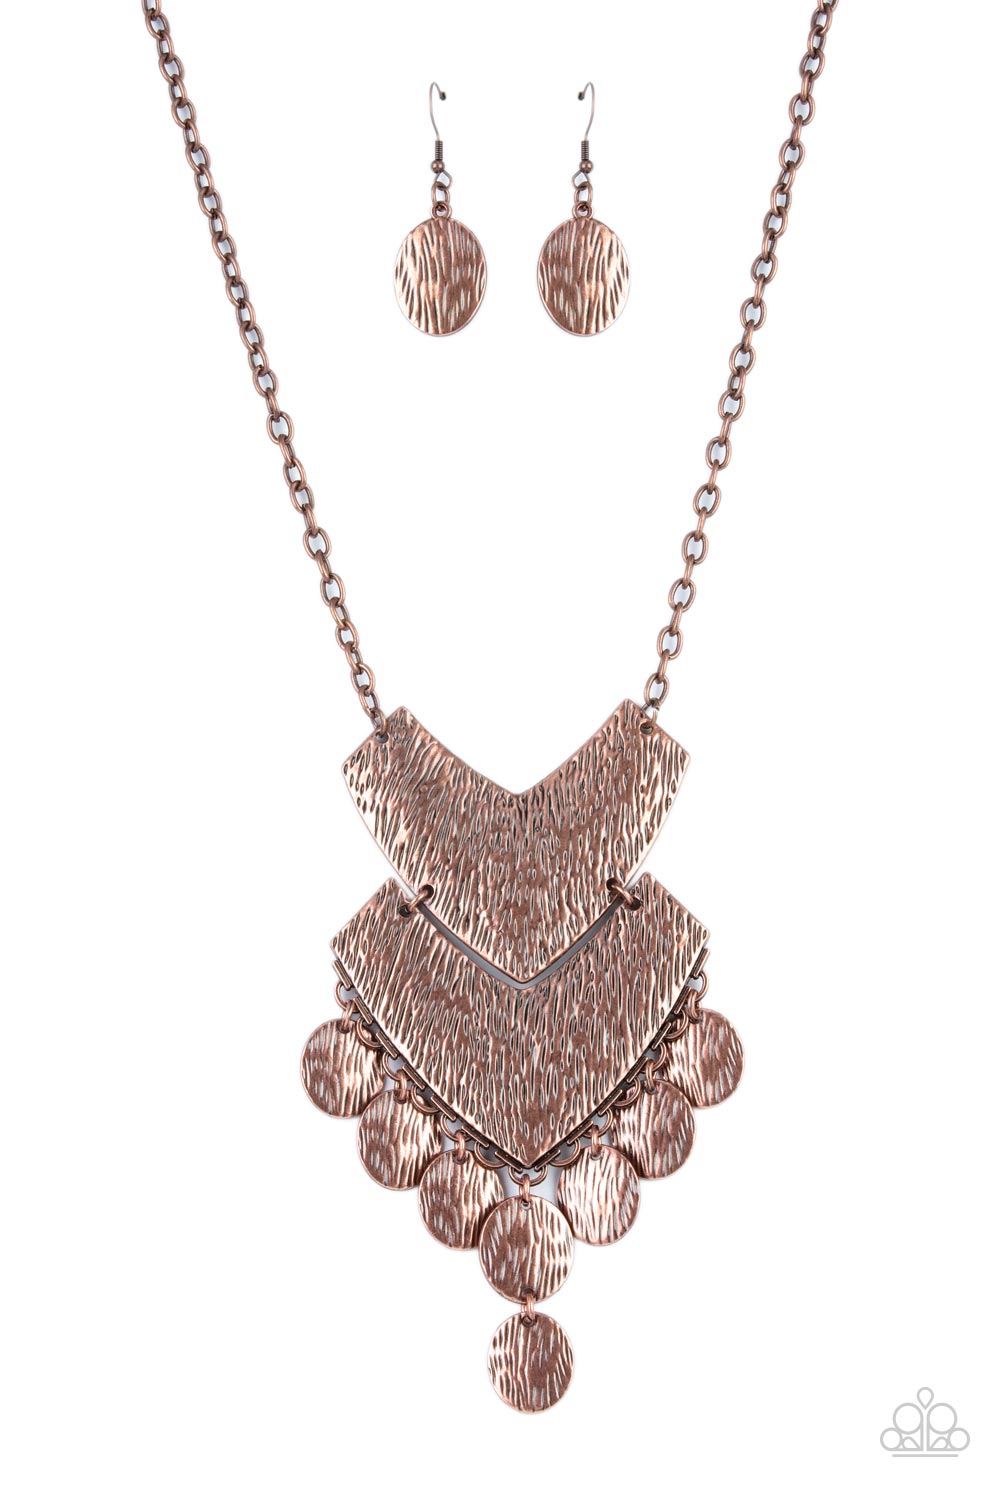 Keys to the ANIMAL Kingdom - copper - Paparazzi necklace